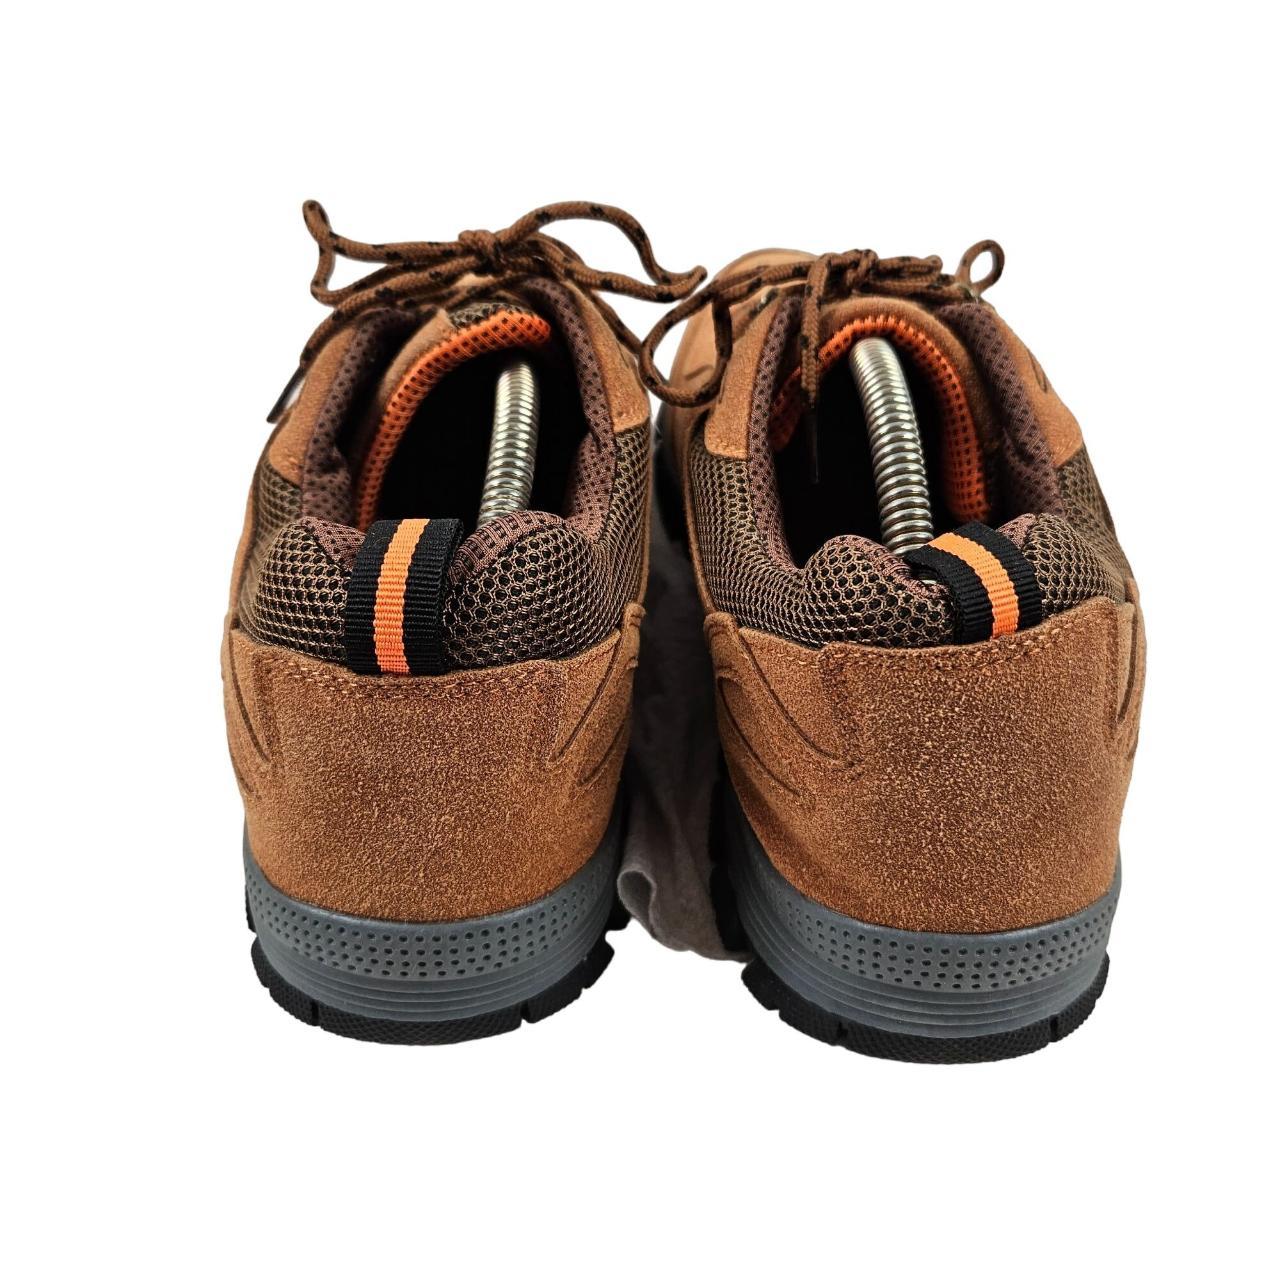 Faux Leather Shoes - Brown - Men | H&M US